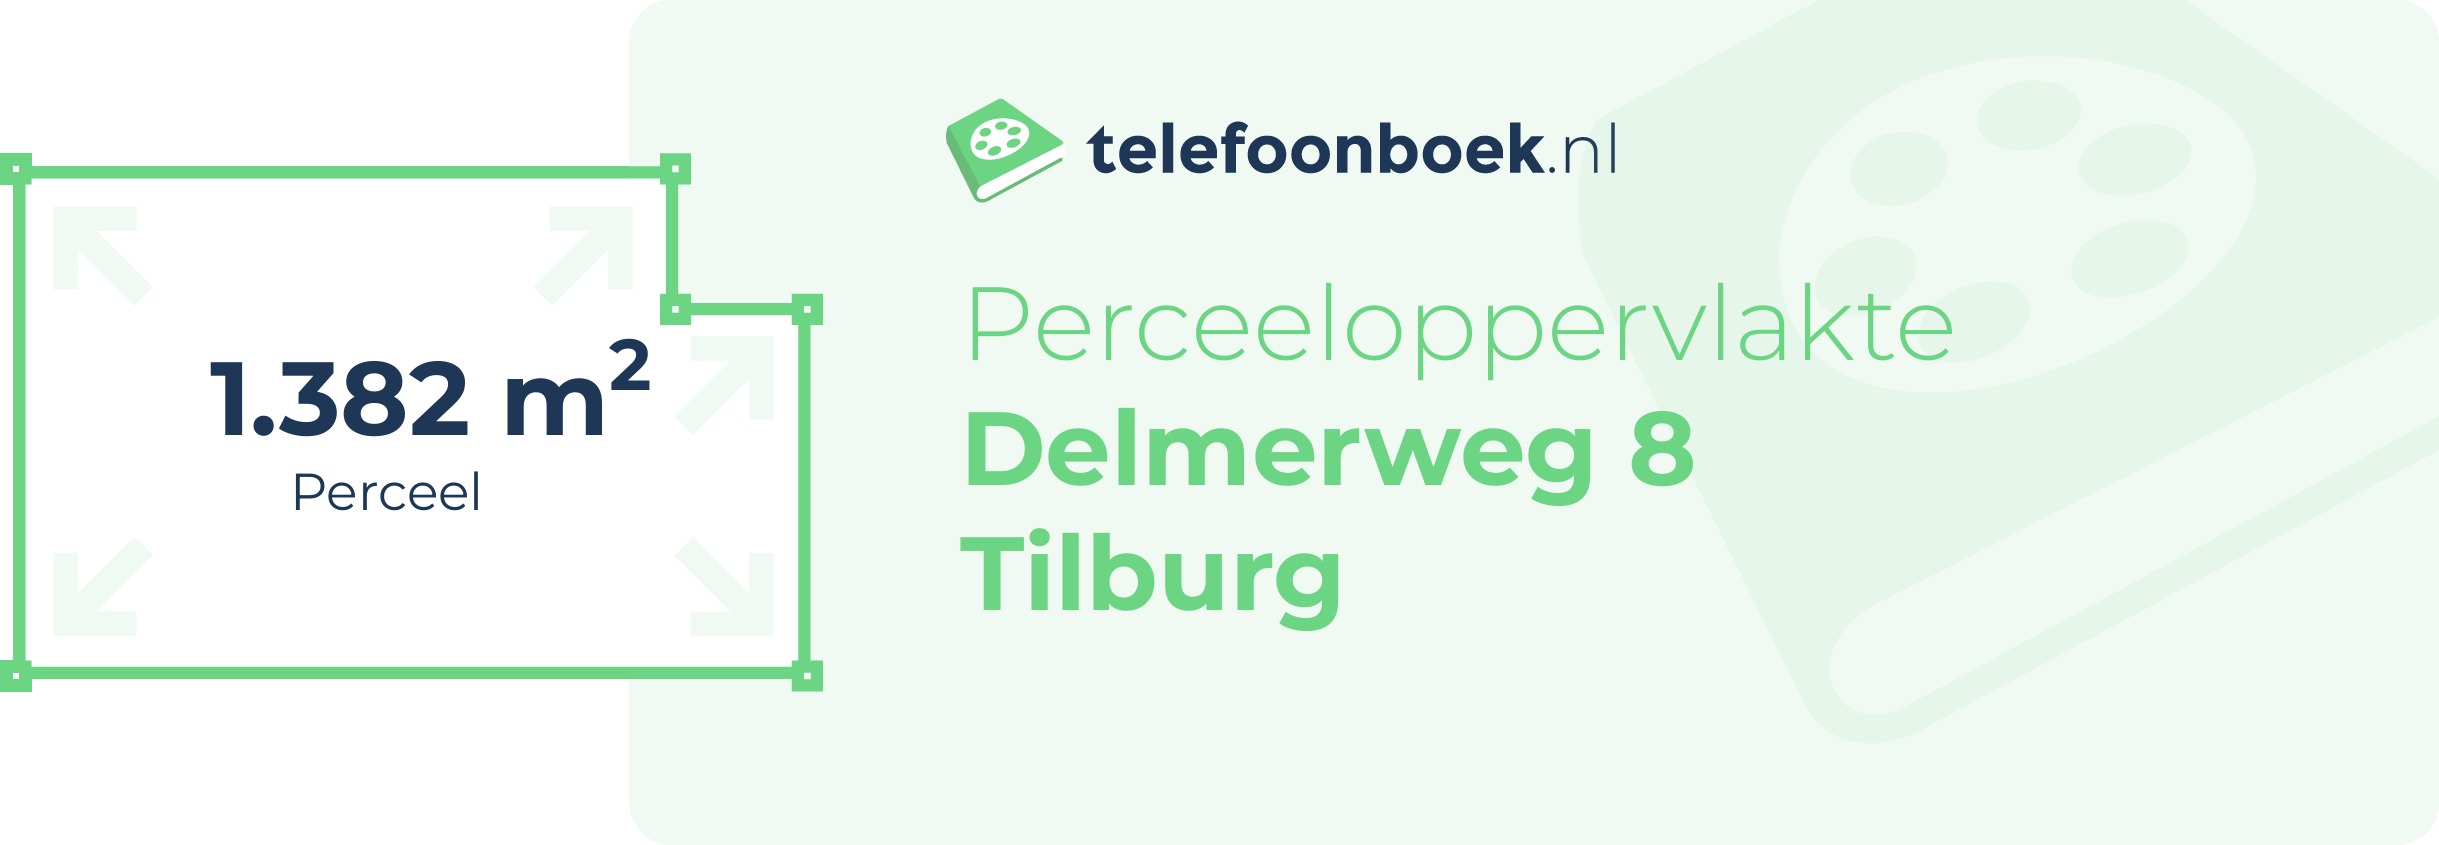 Perceeloppervlakte Delmerweg 8 Tilburg